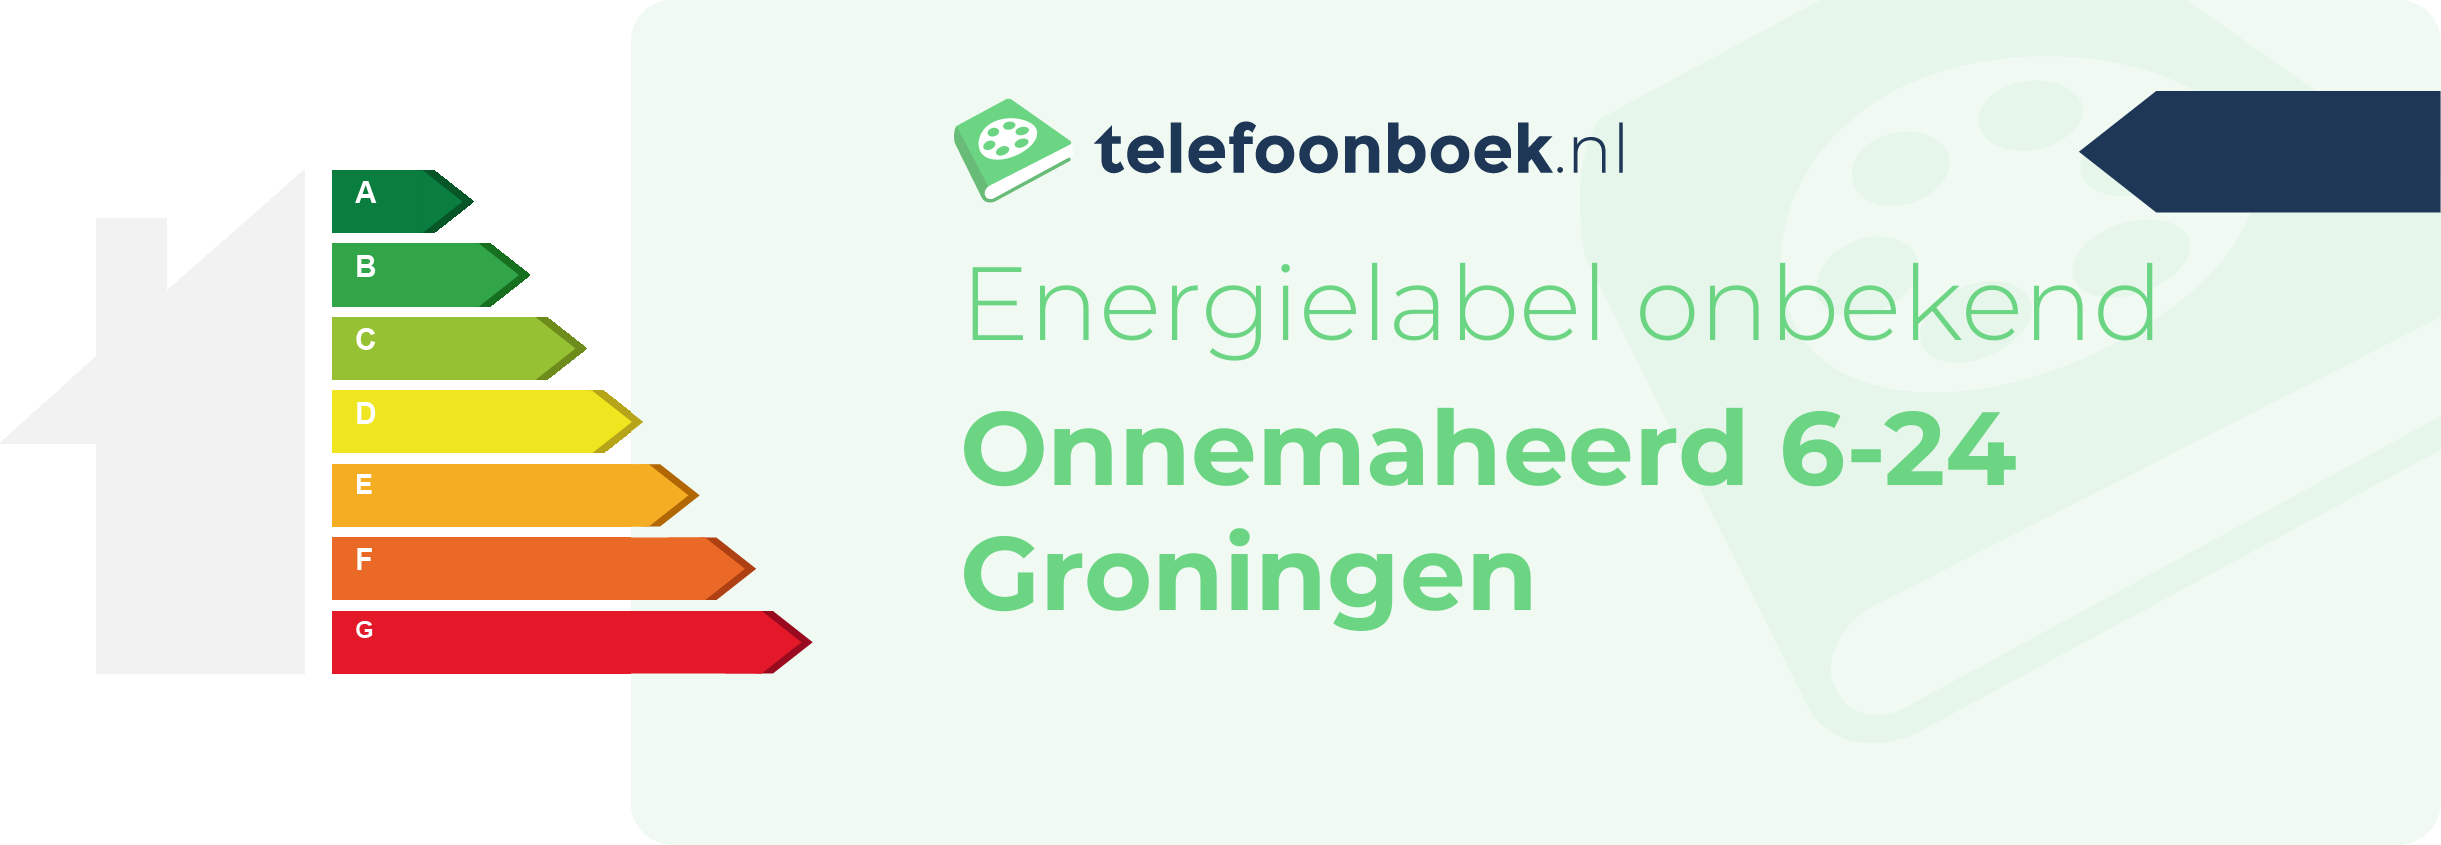 Energielabel Onnemaheerd 6-24 Groningen